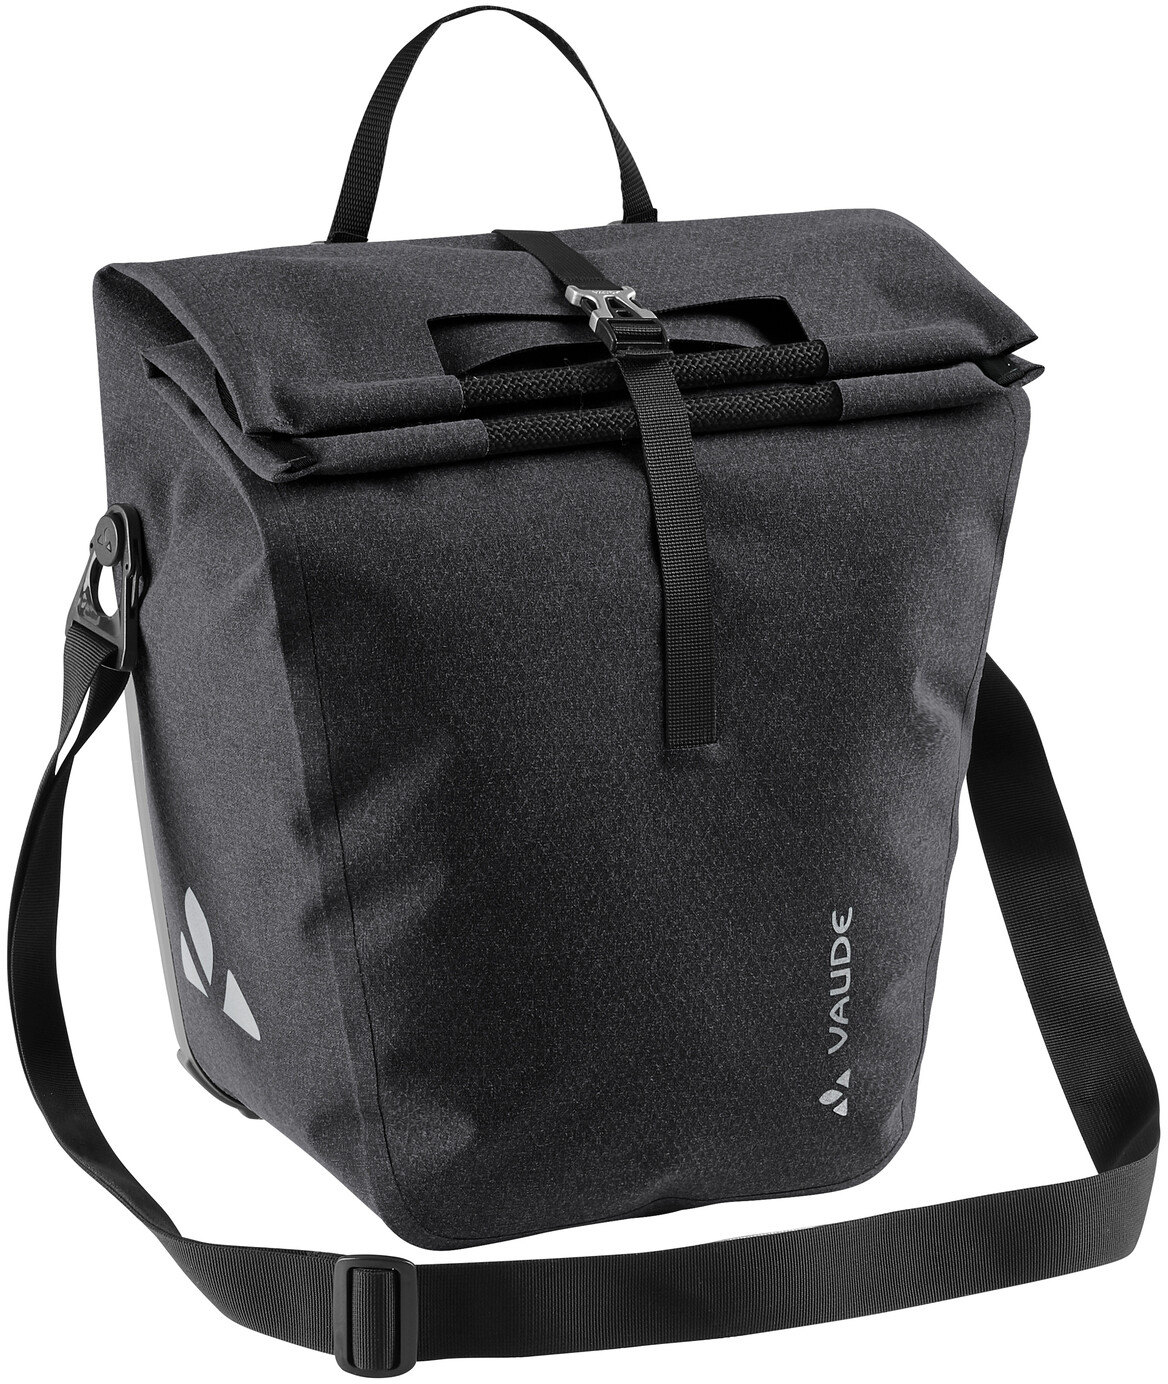 7 L schwarz Breuninger Accessoires Taschen Reisetaschen Fahrradtasche Recycle Single 23 